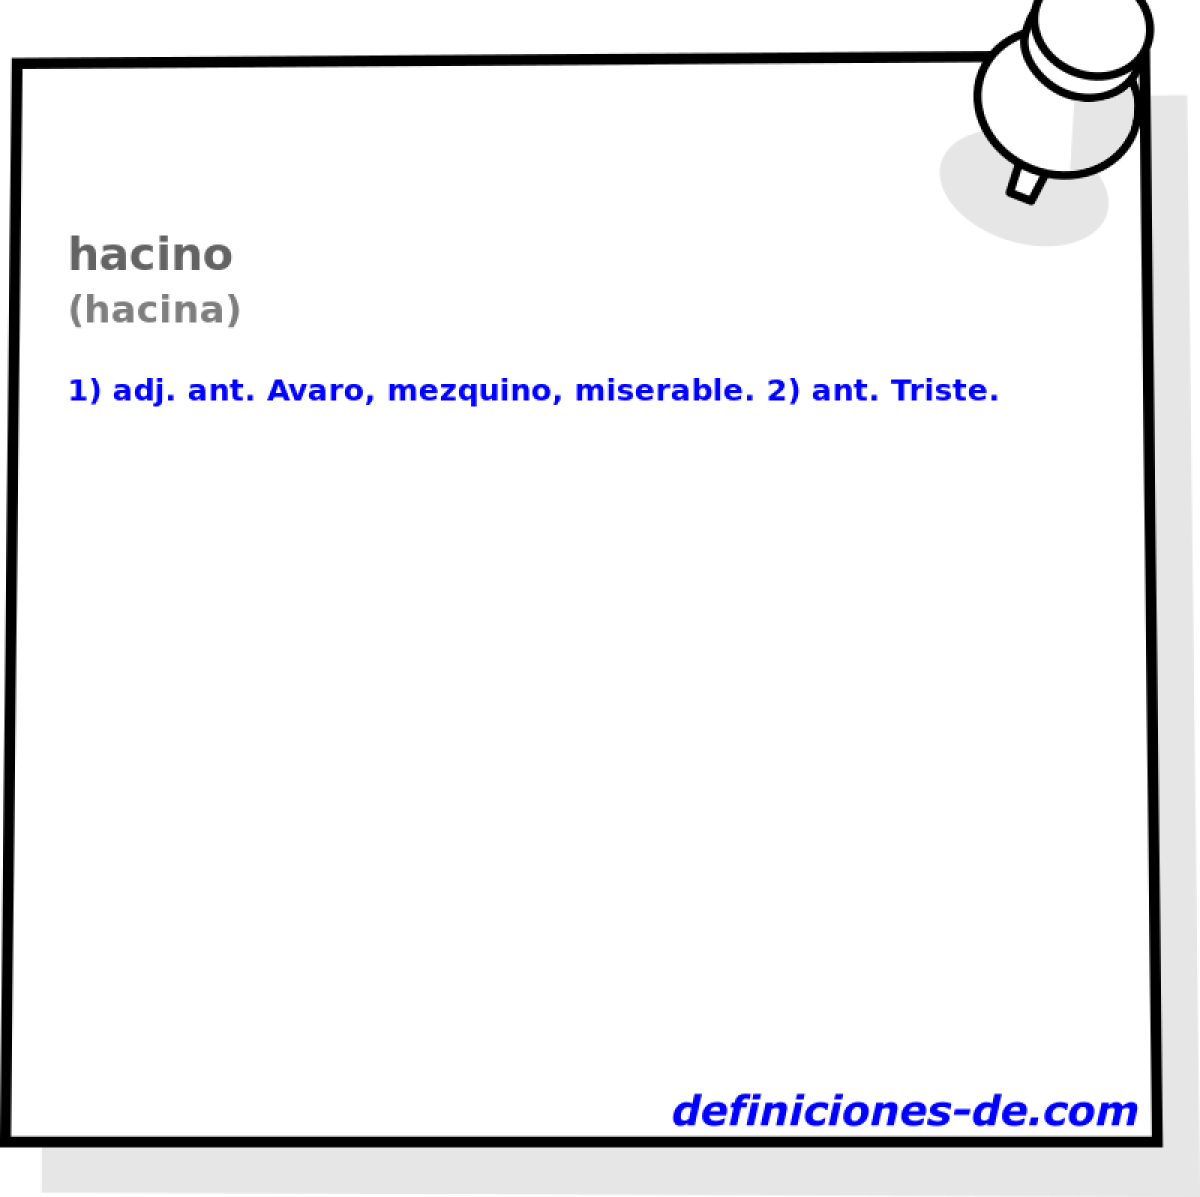 hacino (hacina)